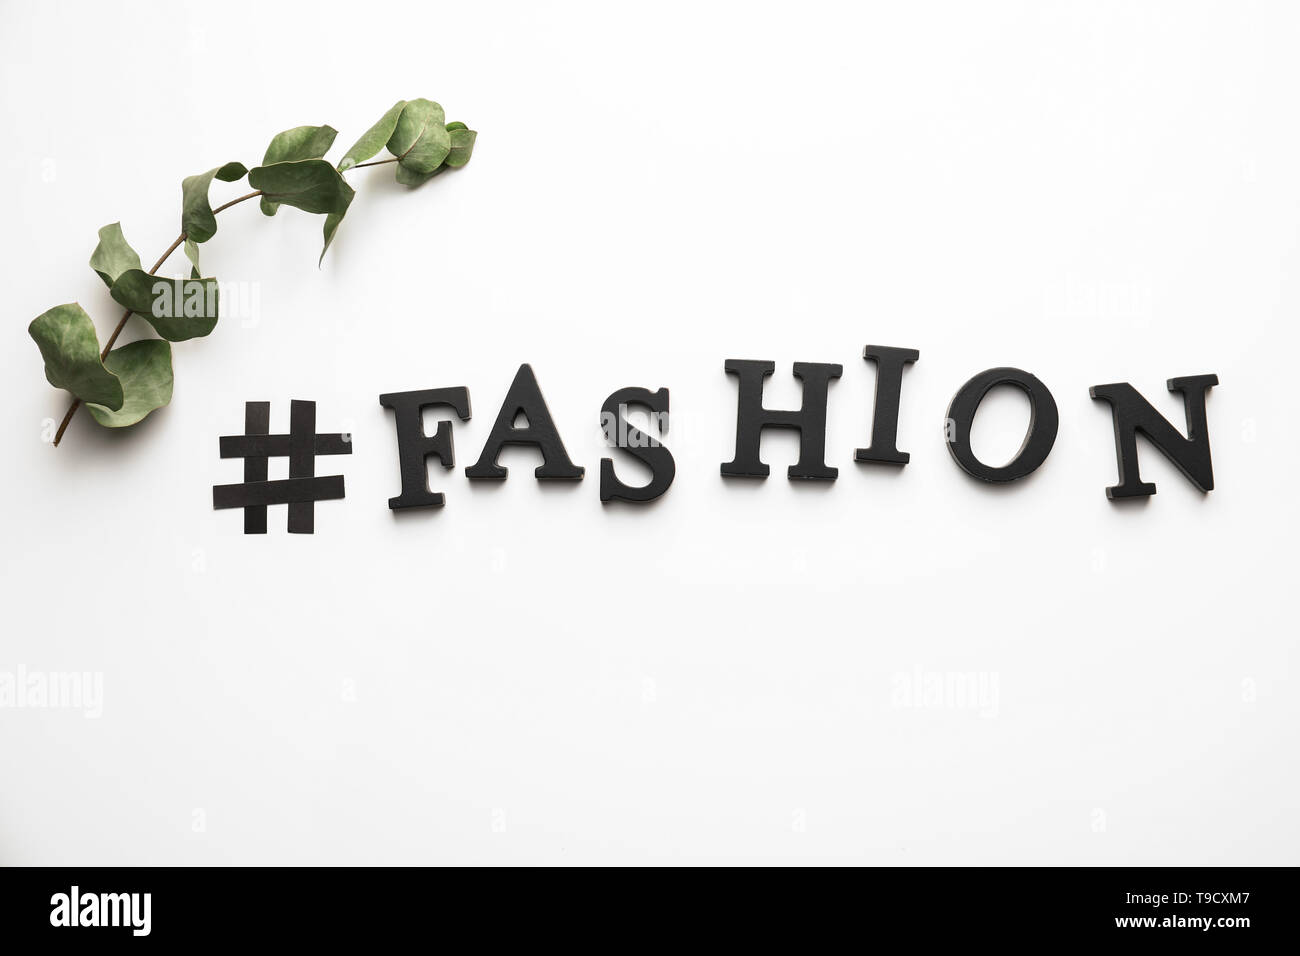 Hashtag moda sobre fondo blanco Fotografía de stock - Alamy